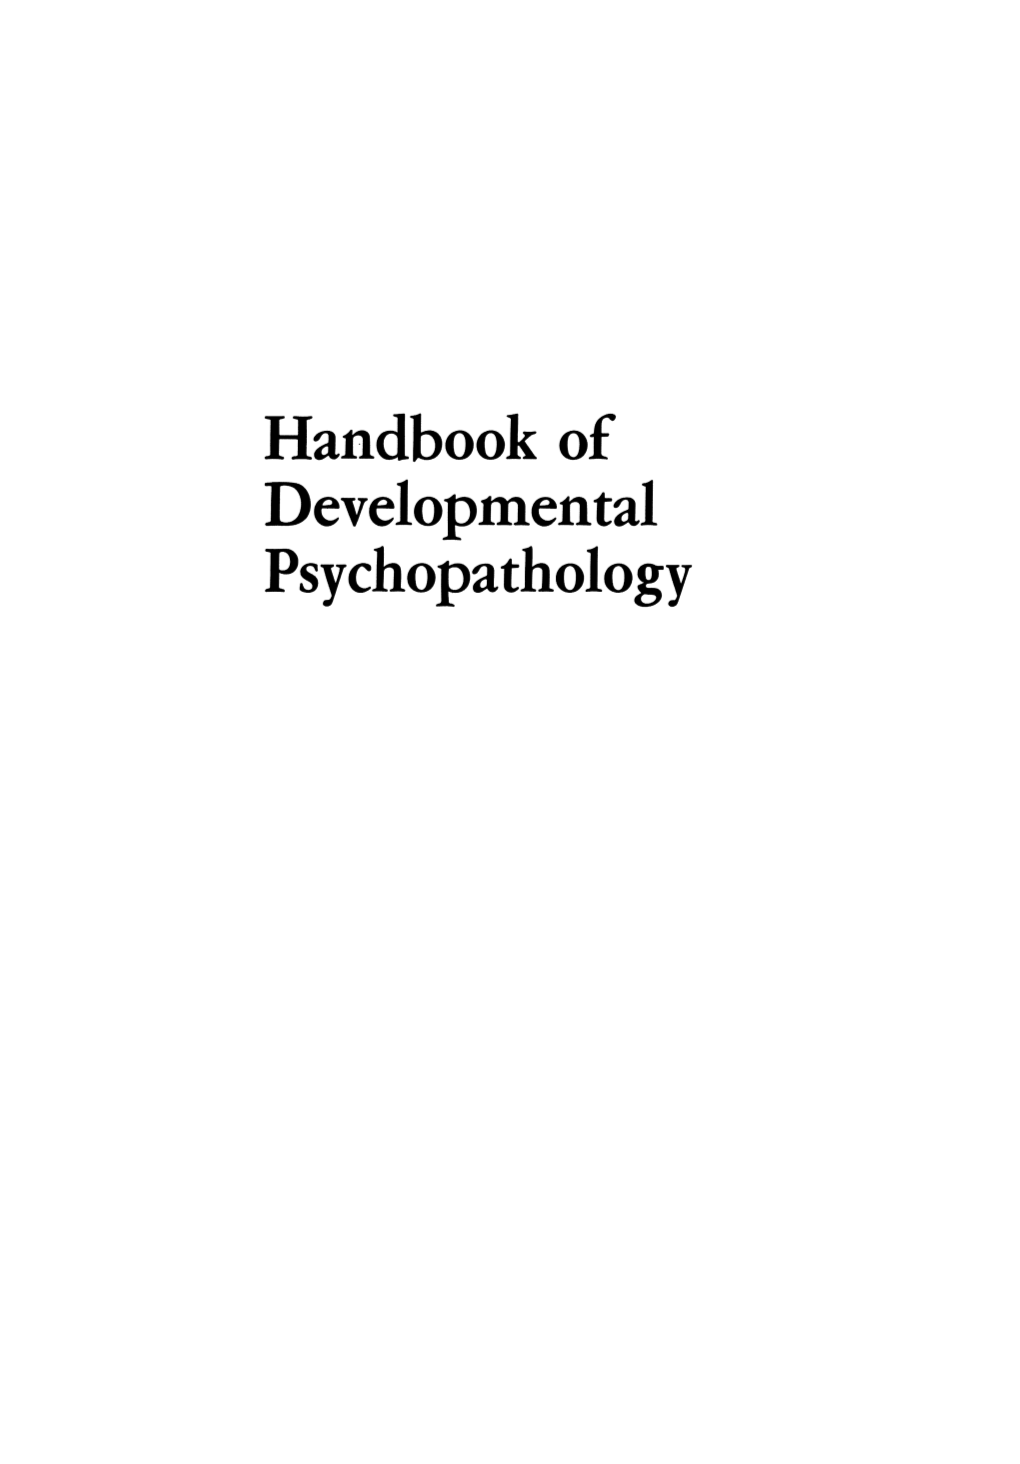 Handbook of Developtnental Psychopathology Handbook of Developmental Psychopathology